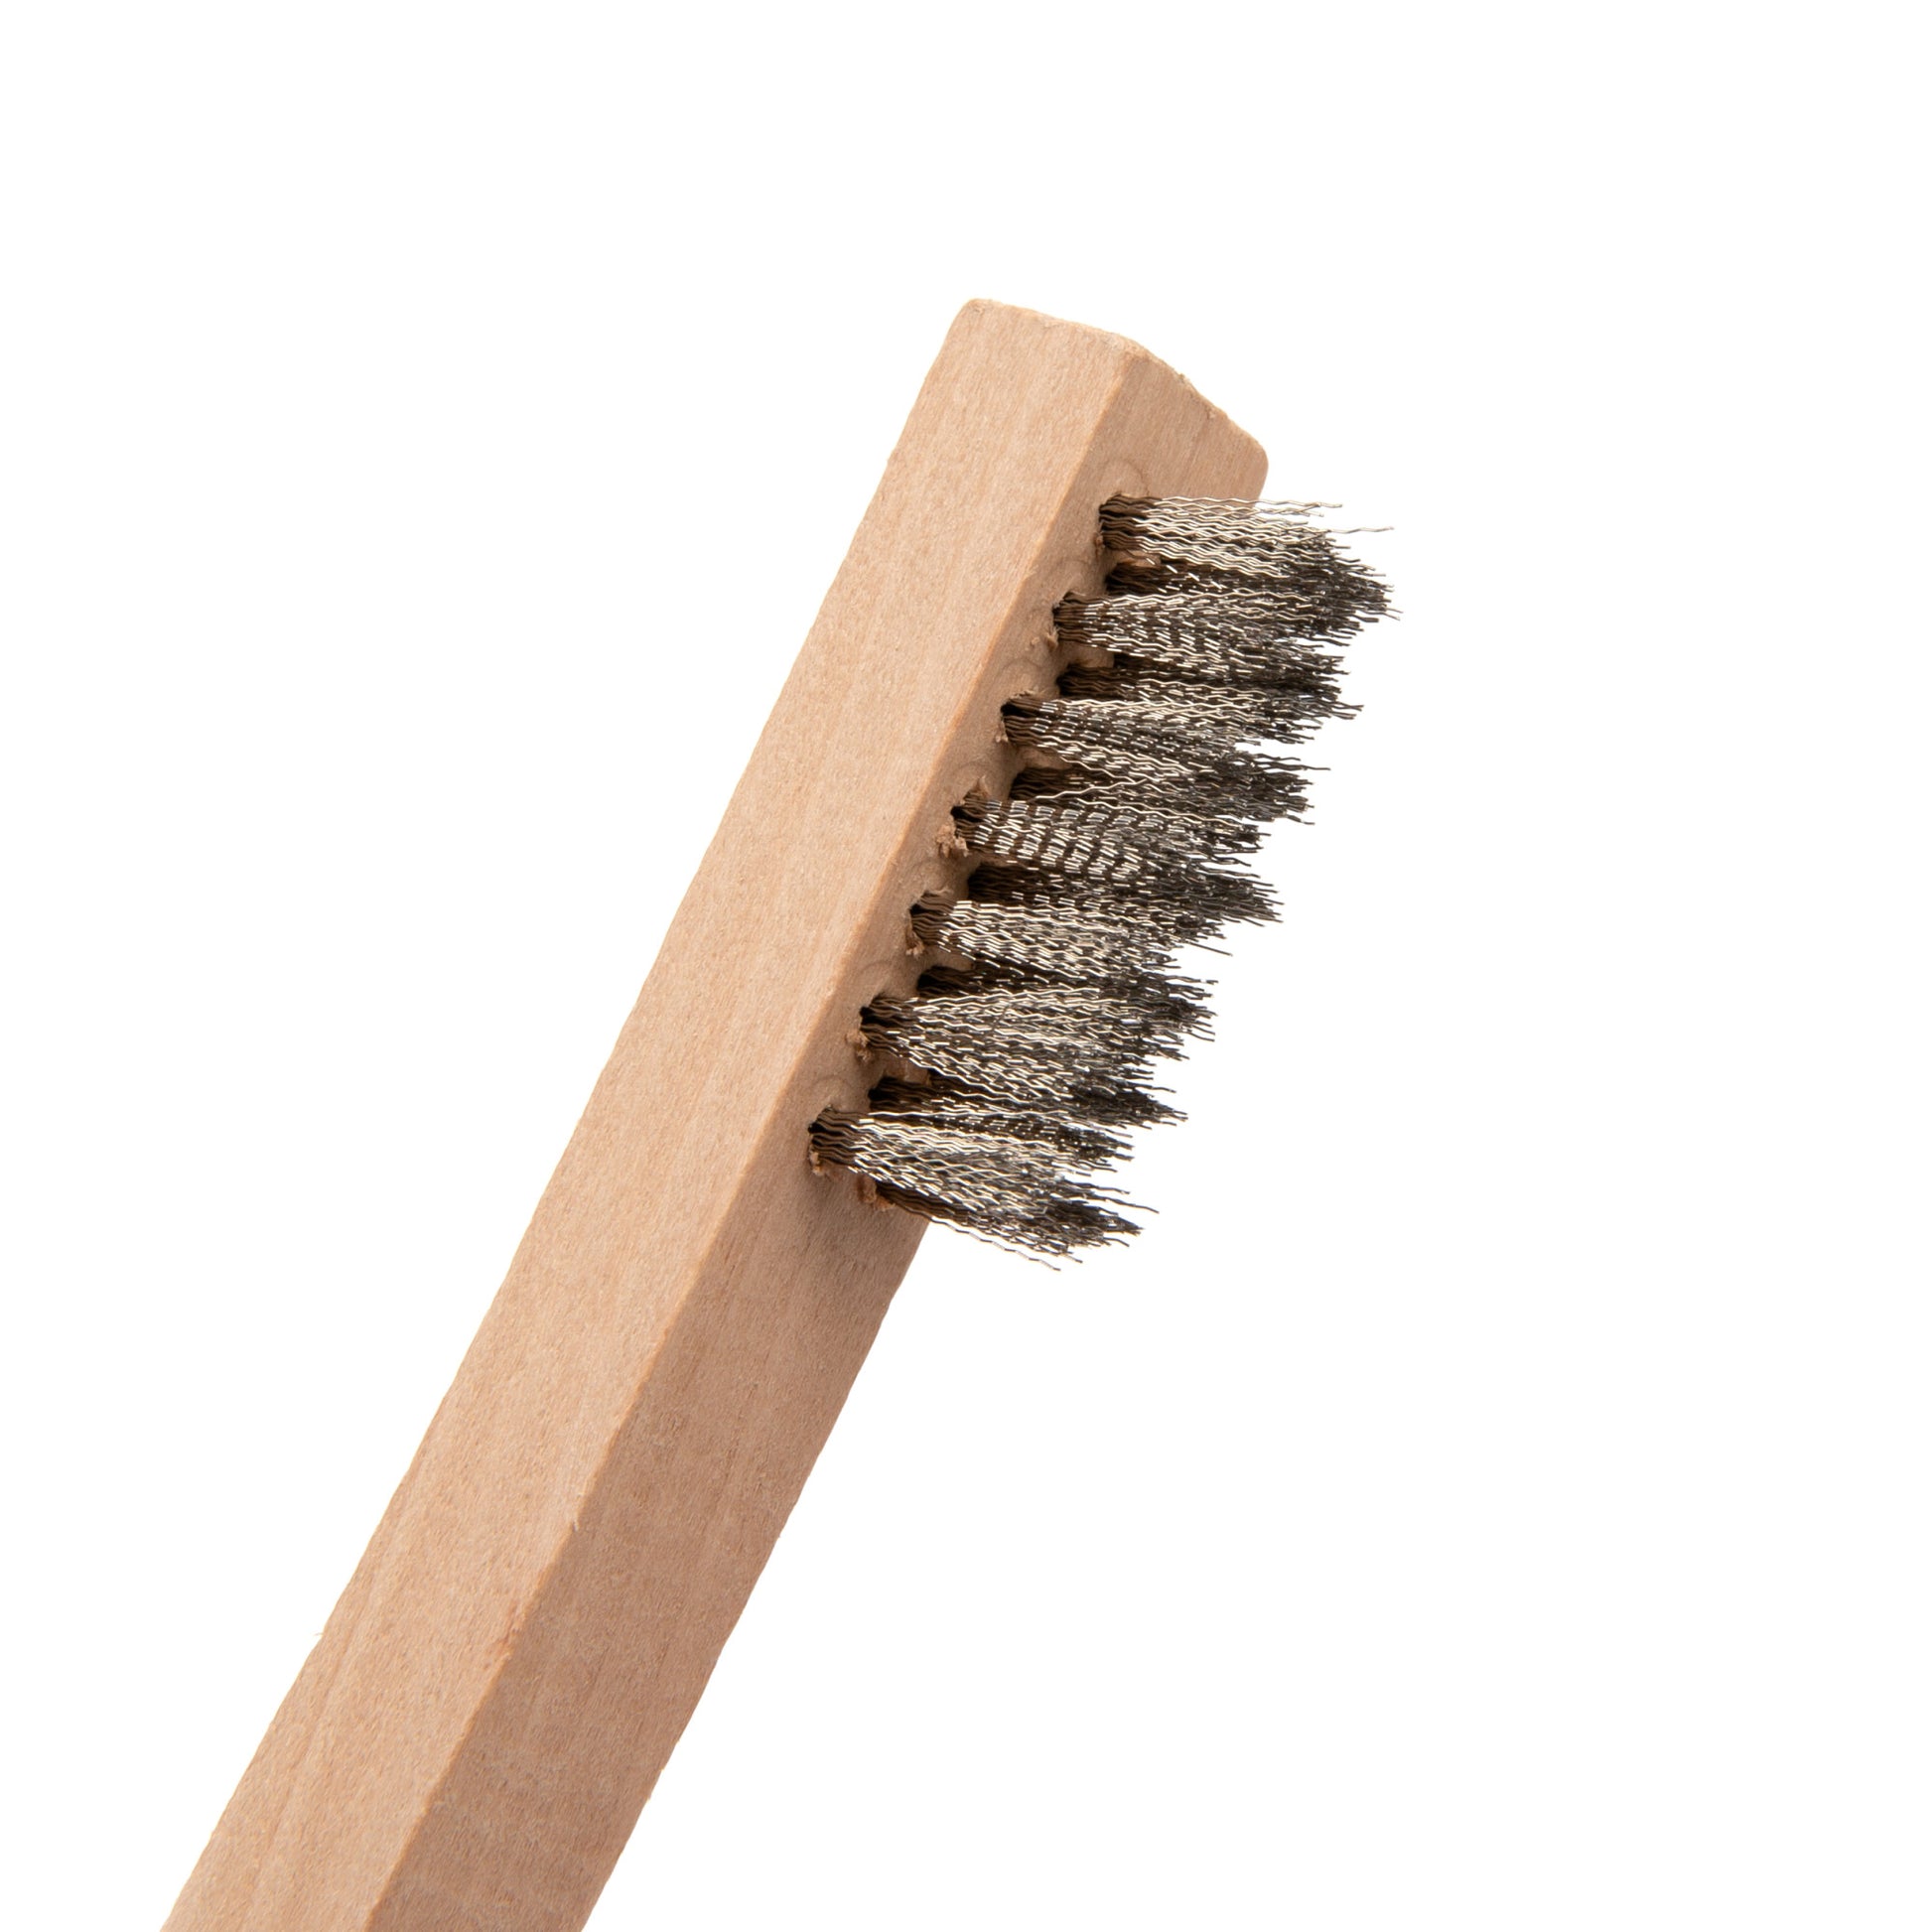 Steelman Stainless Steel Wire Brush With Wood Handle, 5-Pack – Steelman  Tools